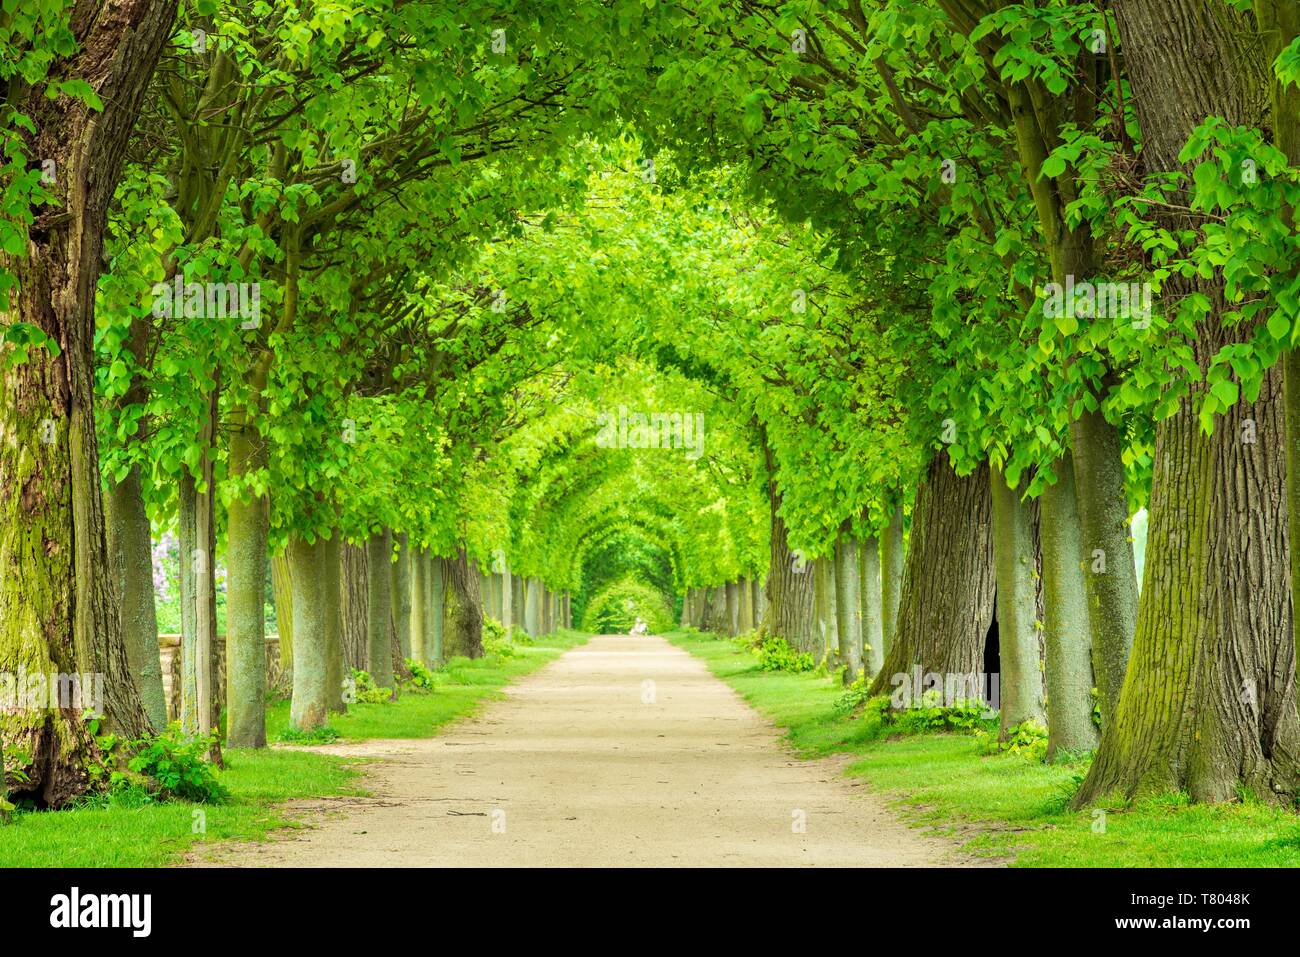 Tunnel-comme l'avenue de tilleul au printemps, feuillage vert frais, parc du château, Hundisburg Haldensleben, Saxe-Anhalt, Allemagne Banque D'Images